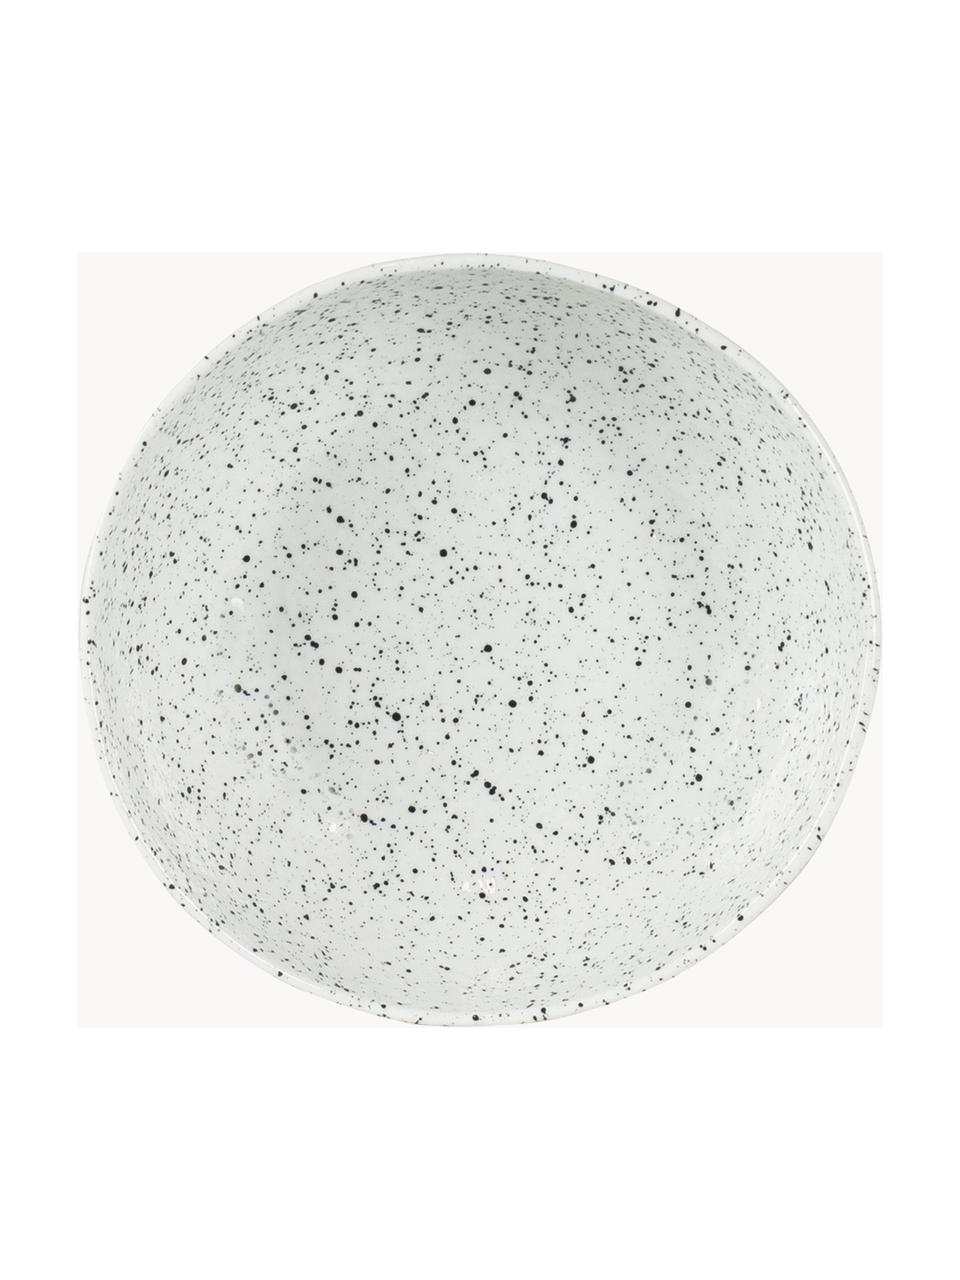 Porseleinen soepbord Poppi, 2 stuks, Porselein, Wit, zwart gespikkeld, Ø 20 x H 8 cm